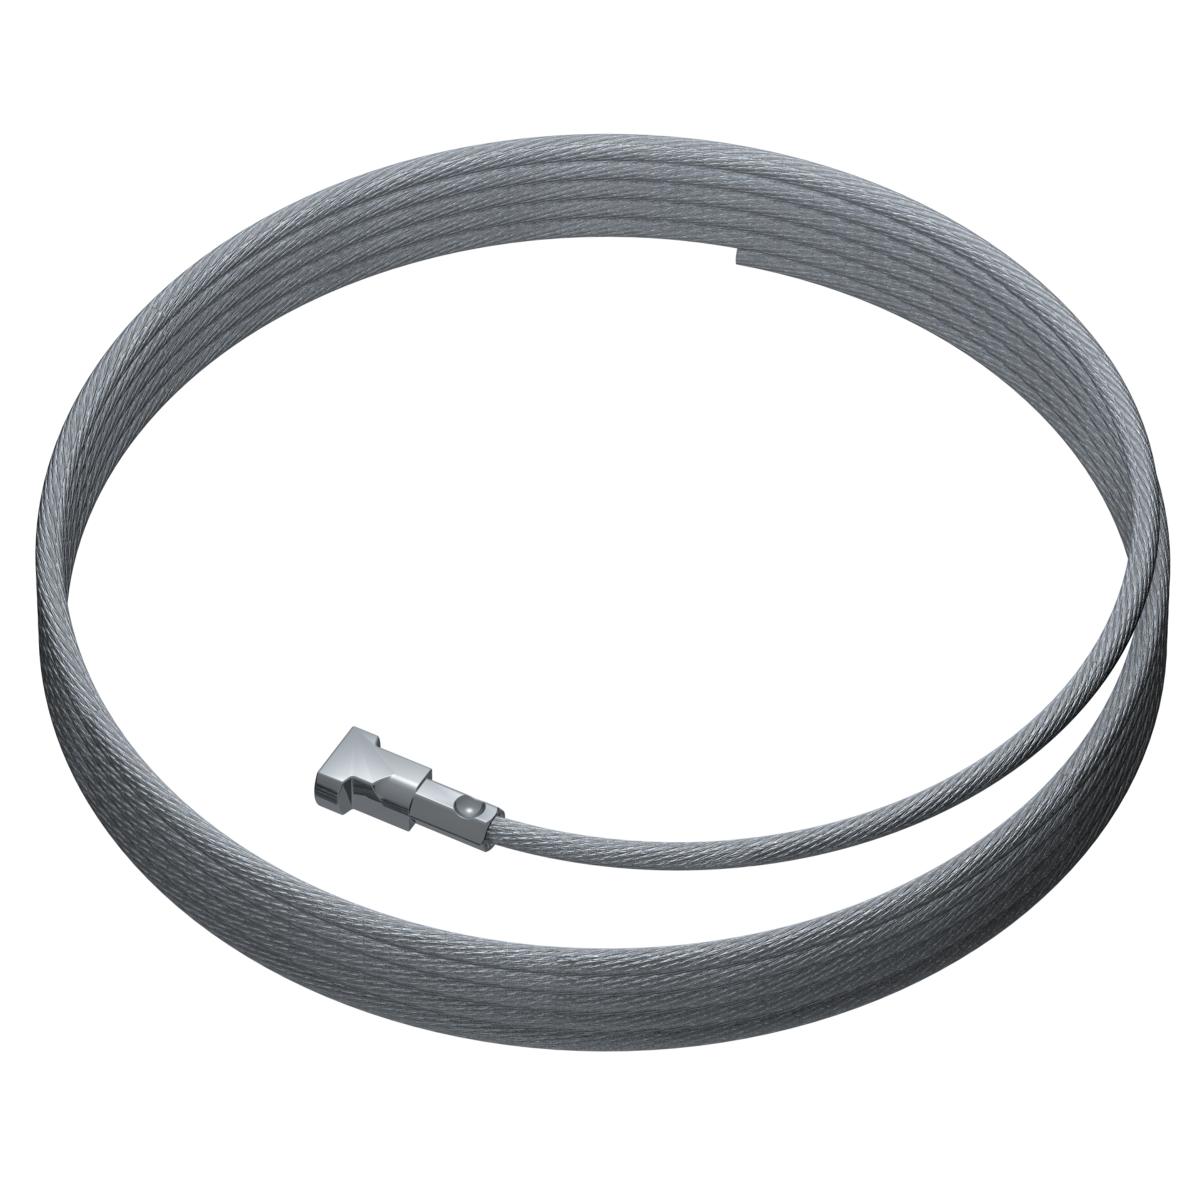 Drahtseile24 Câble en acier avec crochet et œillet – Câble de